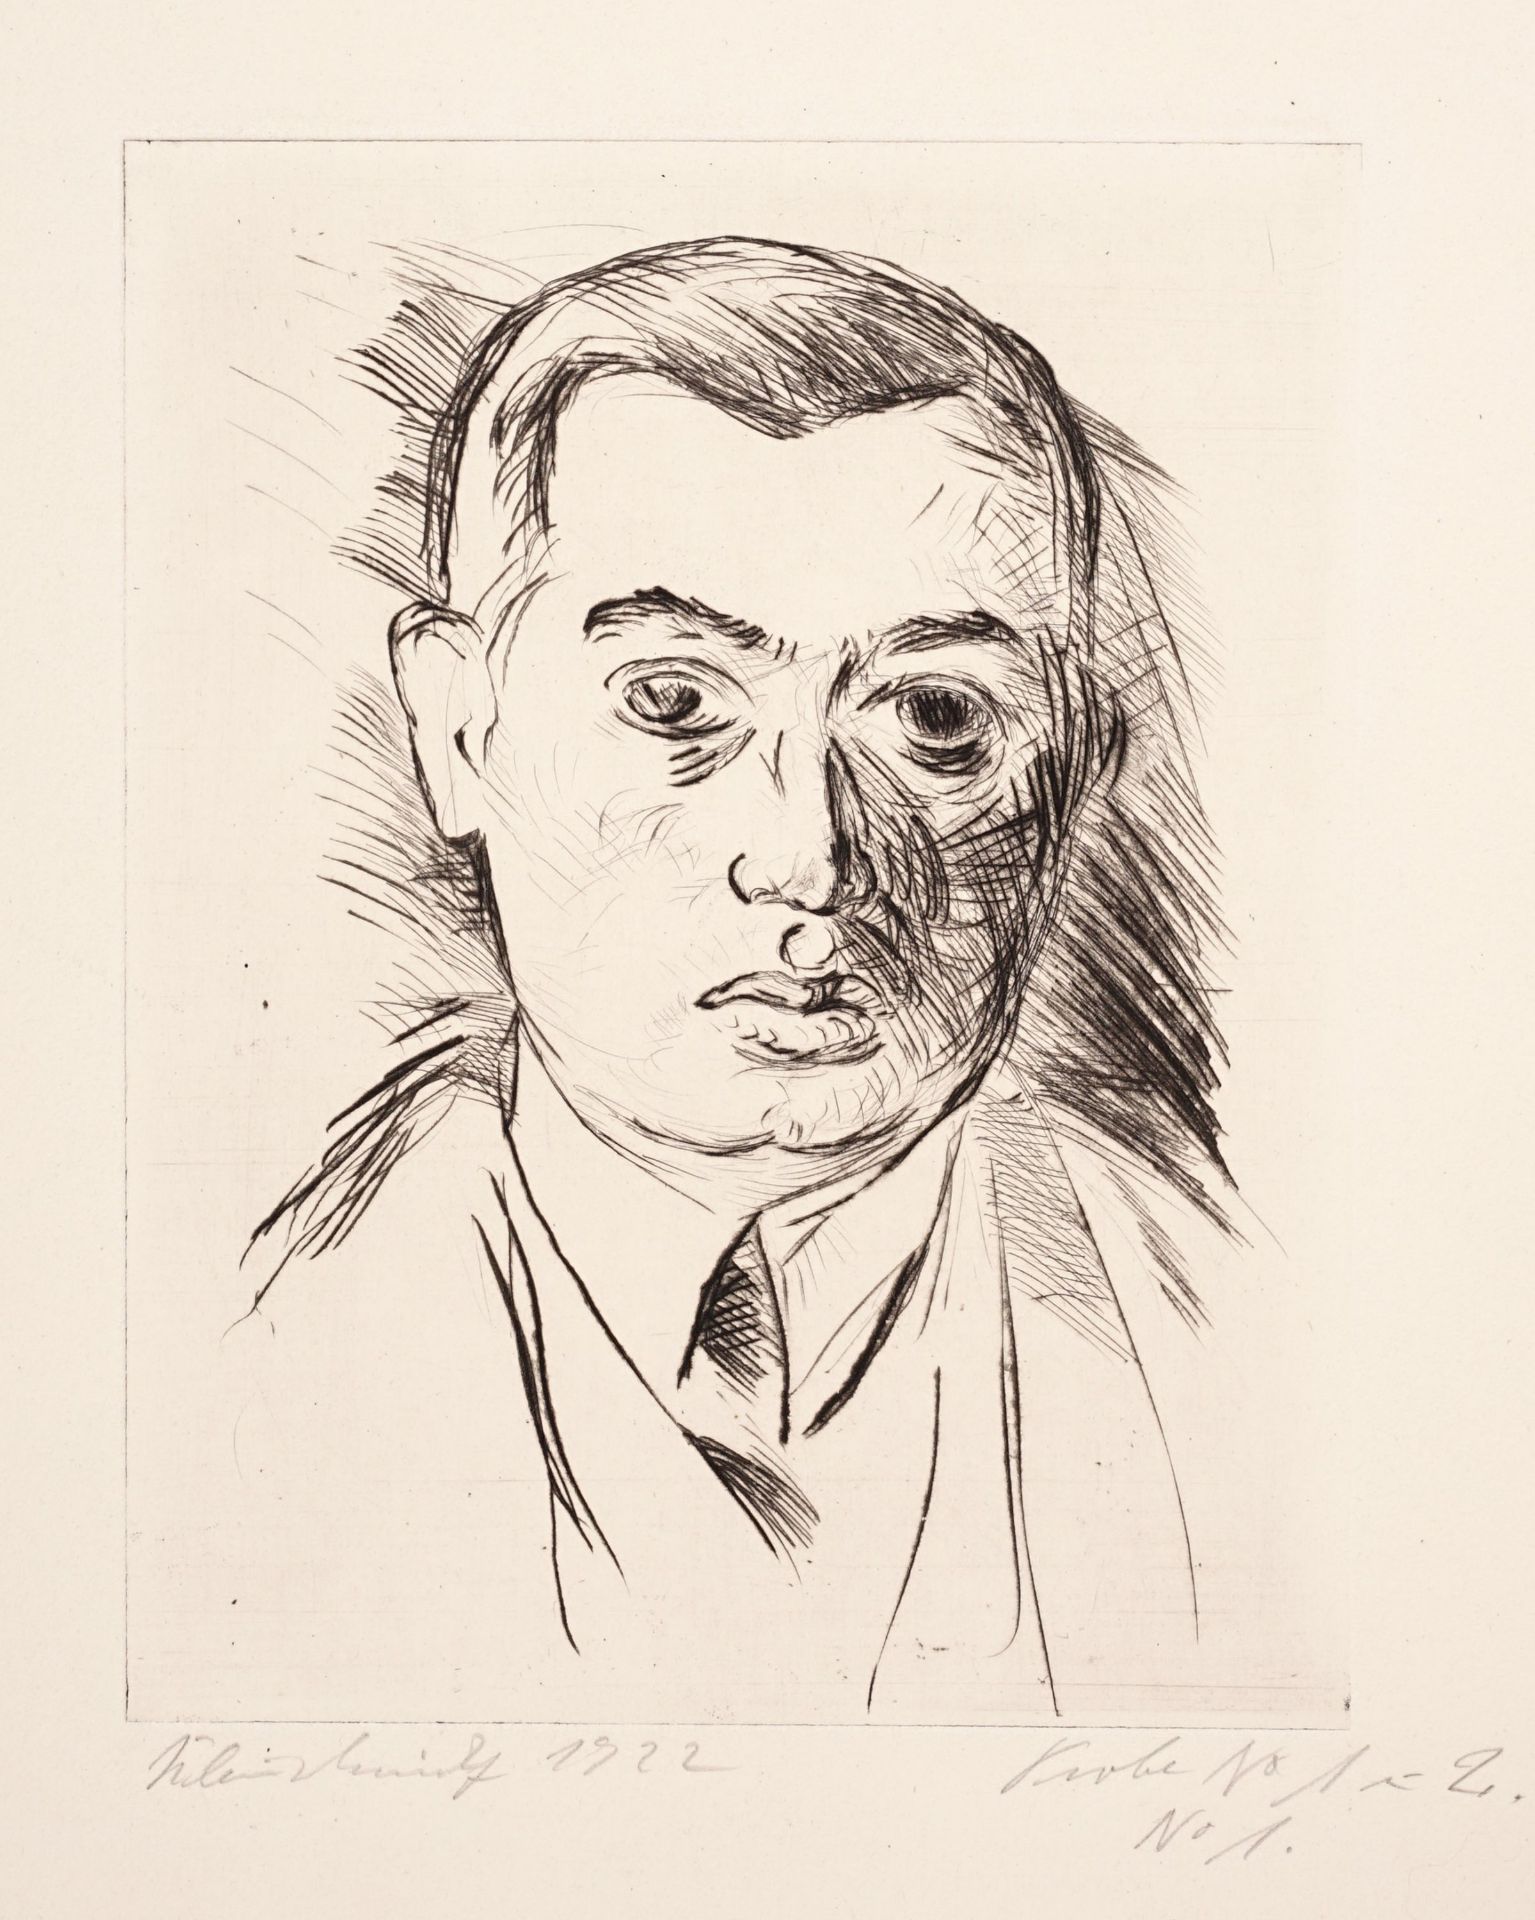 Paul Kleinschmidt "Bildnis Marcy". 1922.